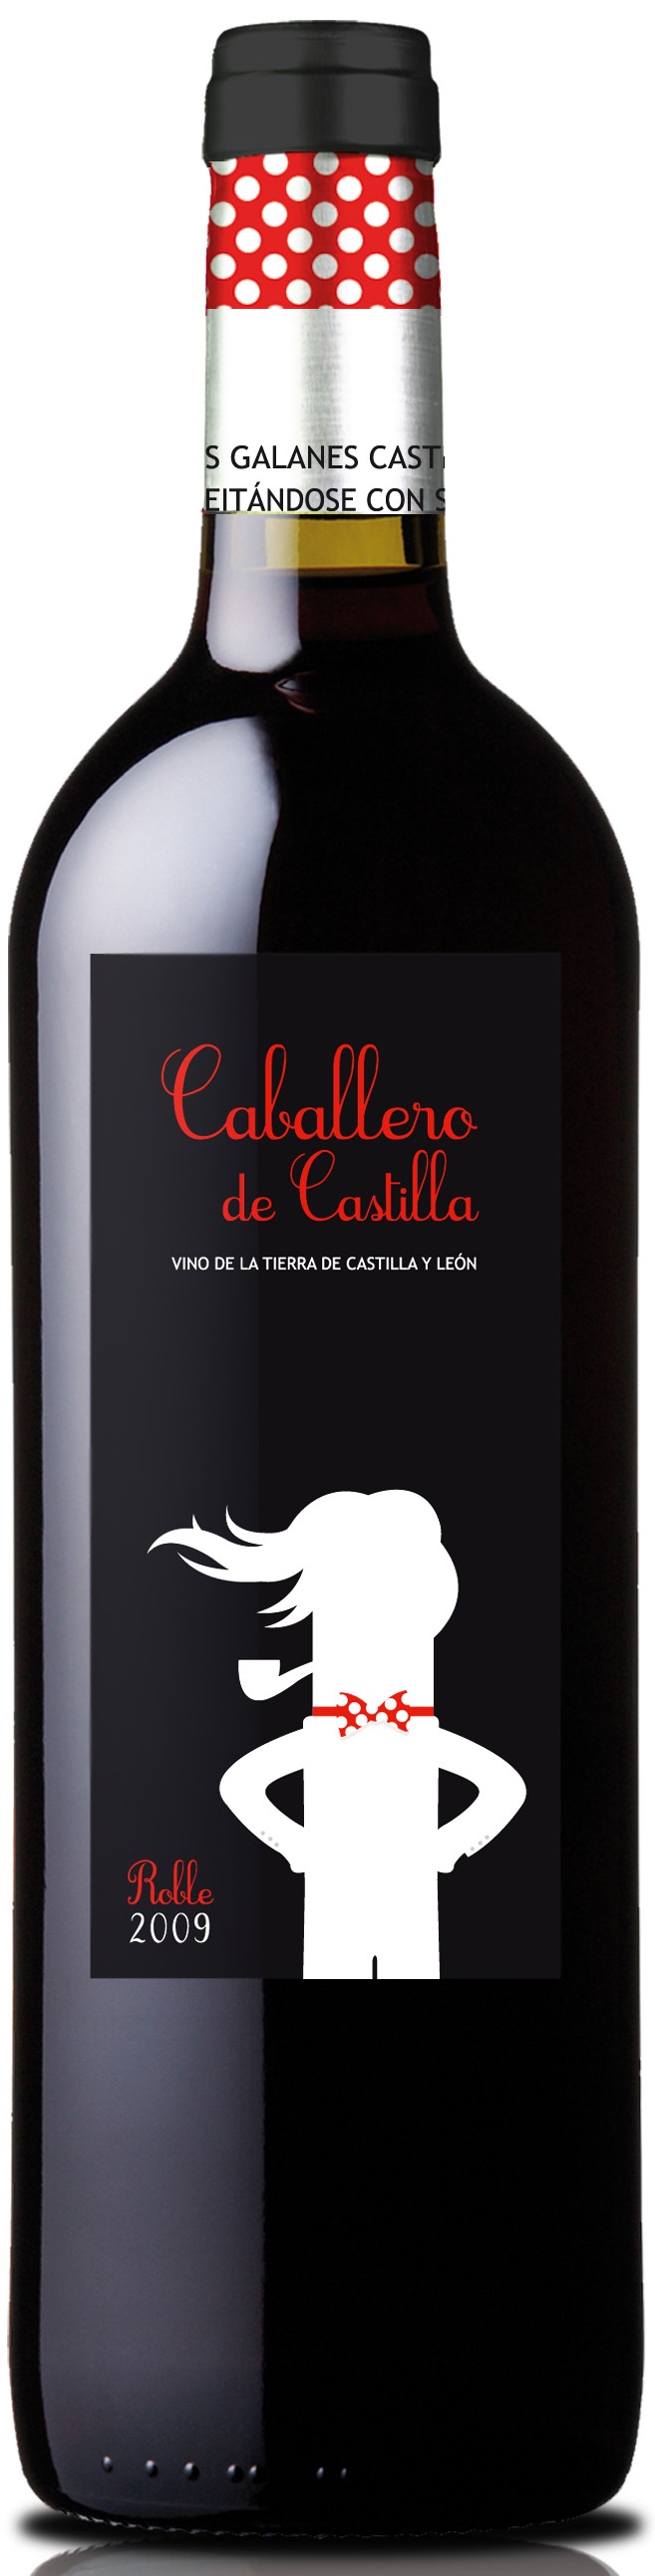 Logo Wein Caballero de Castilla Roble